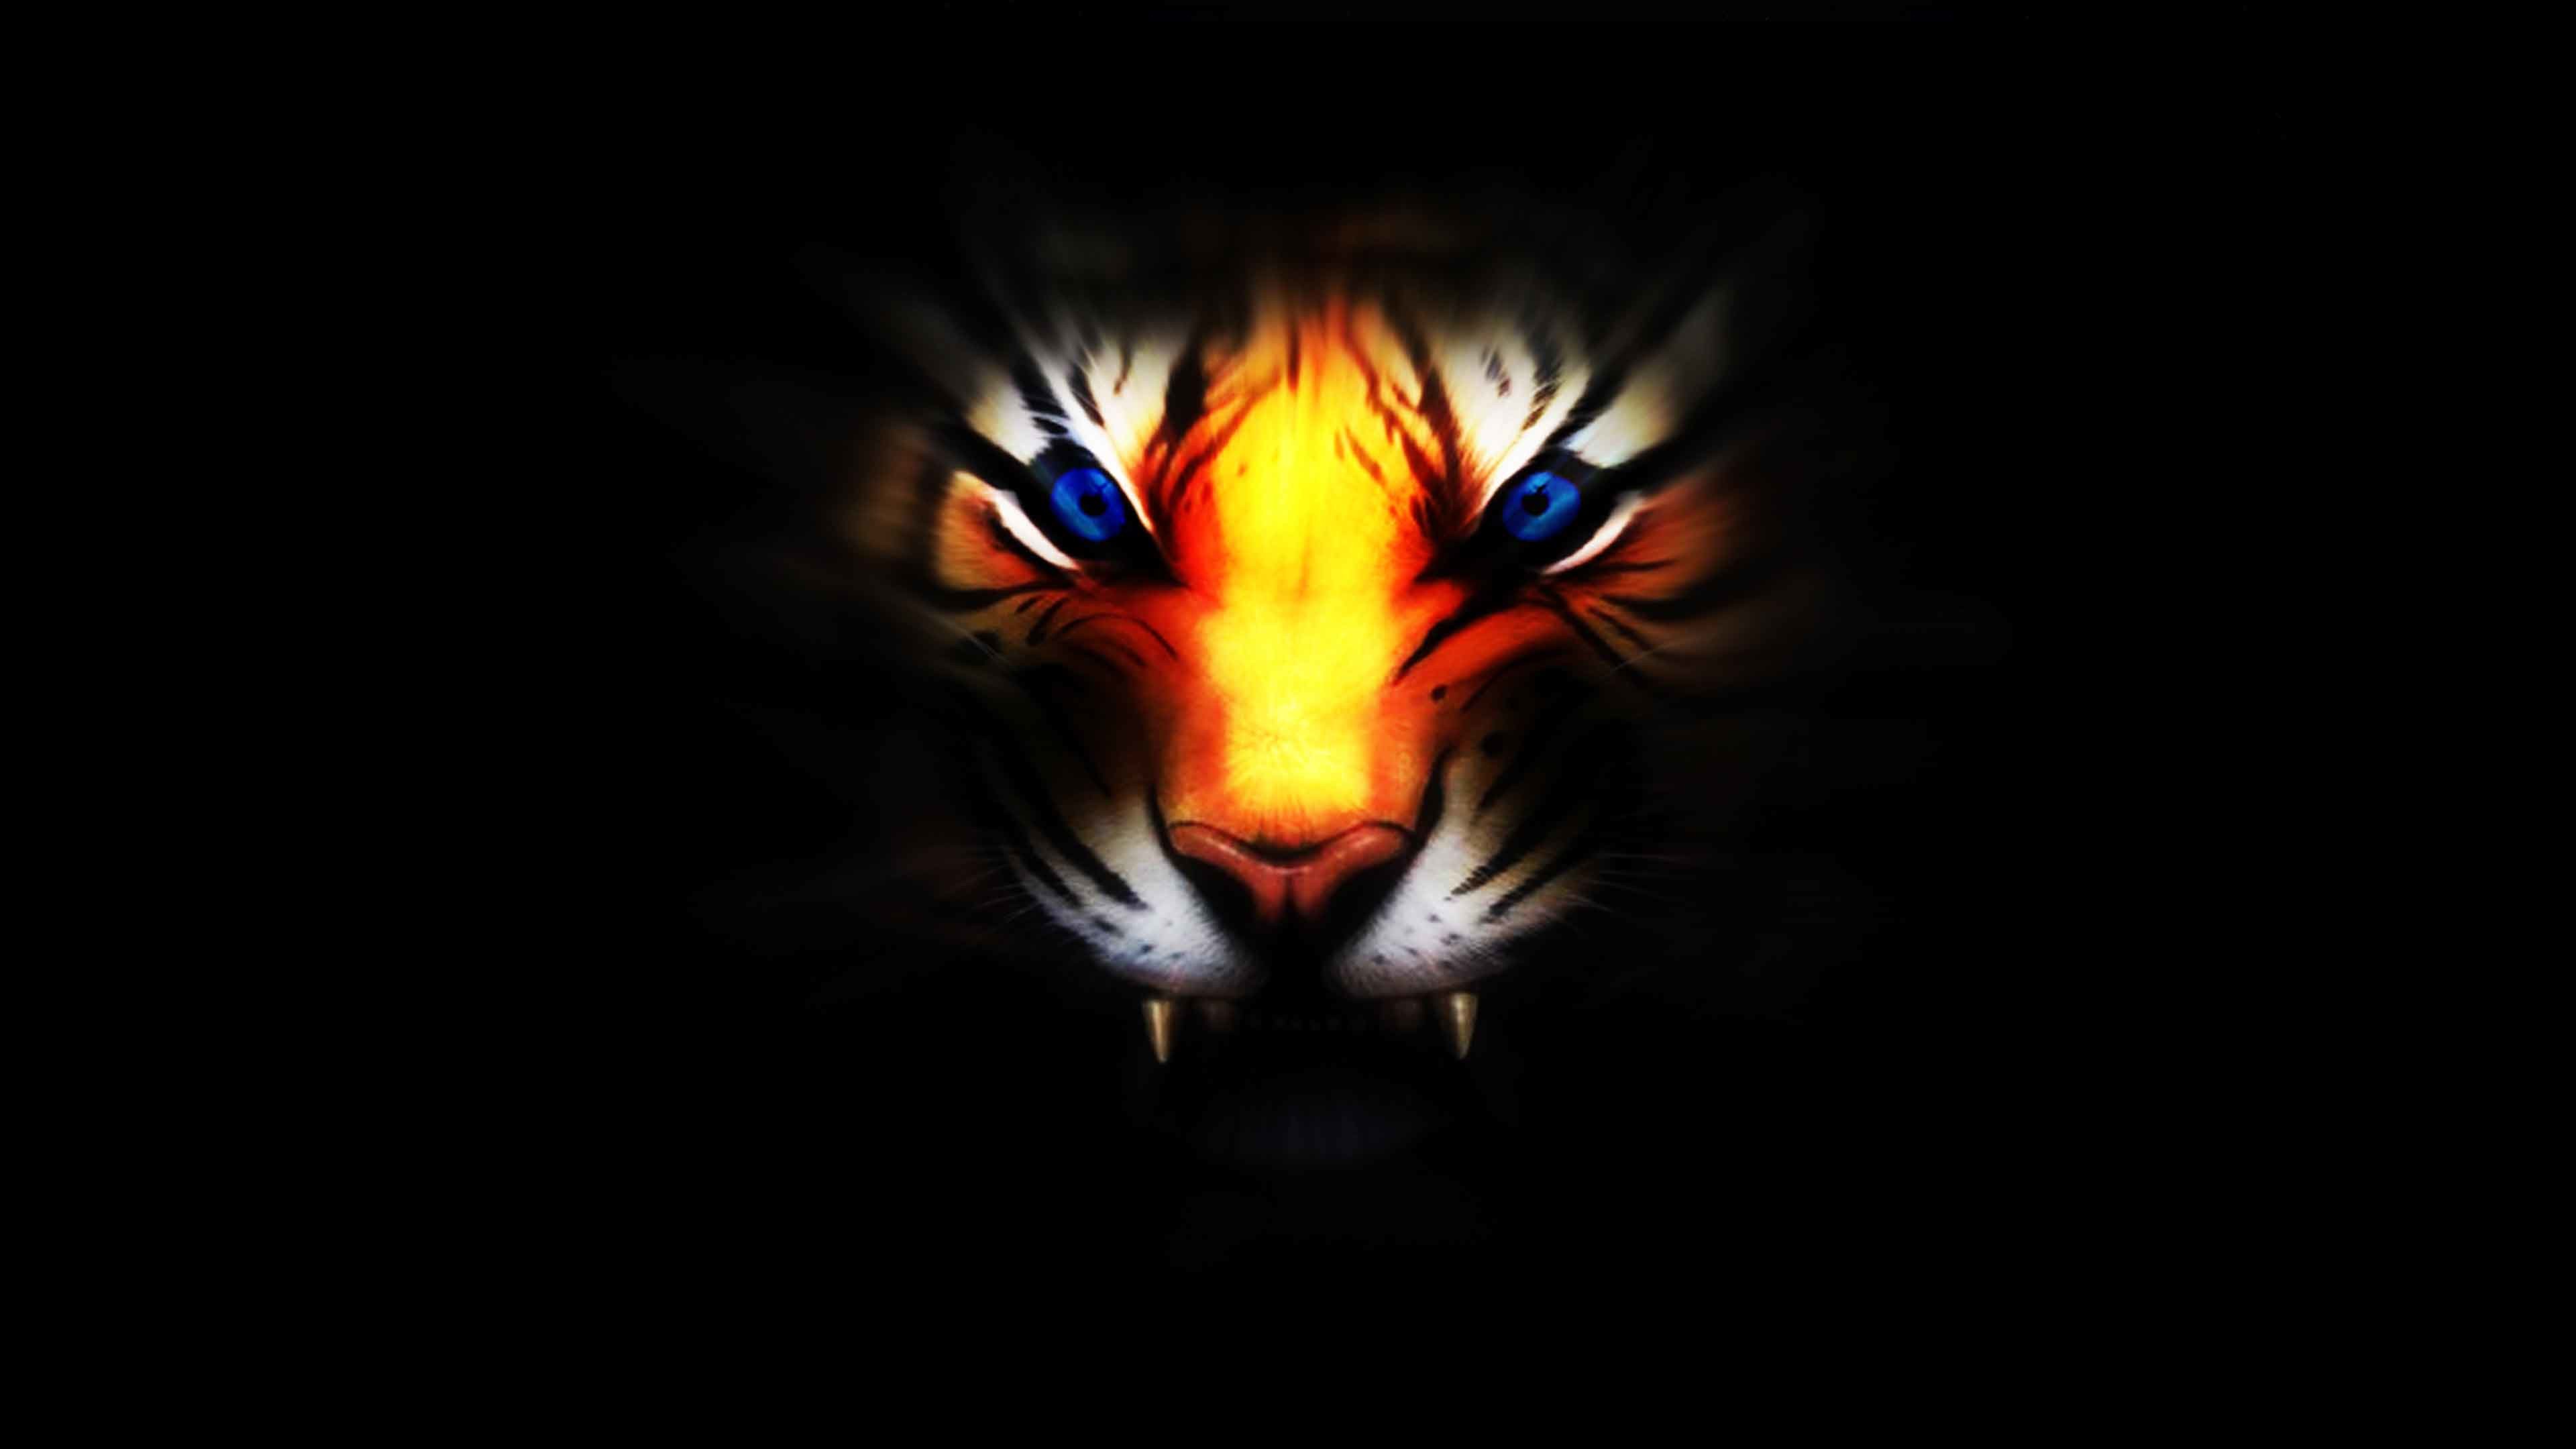 HD wallpaper: Tiger 3d Computer Digital Hd Wallpaper 2560×1440